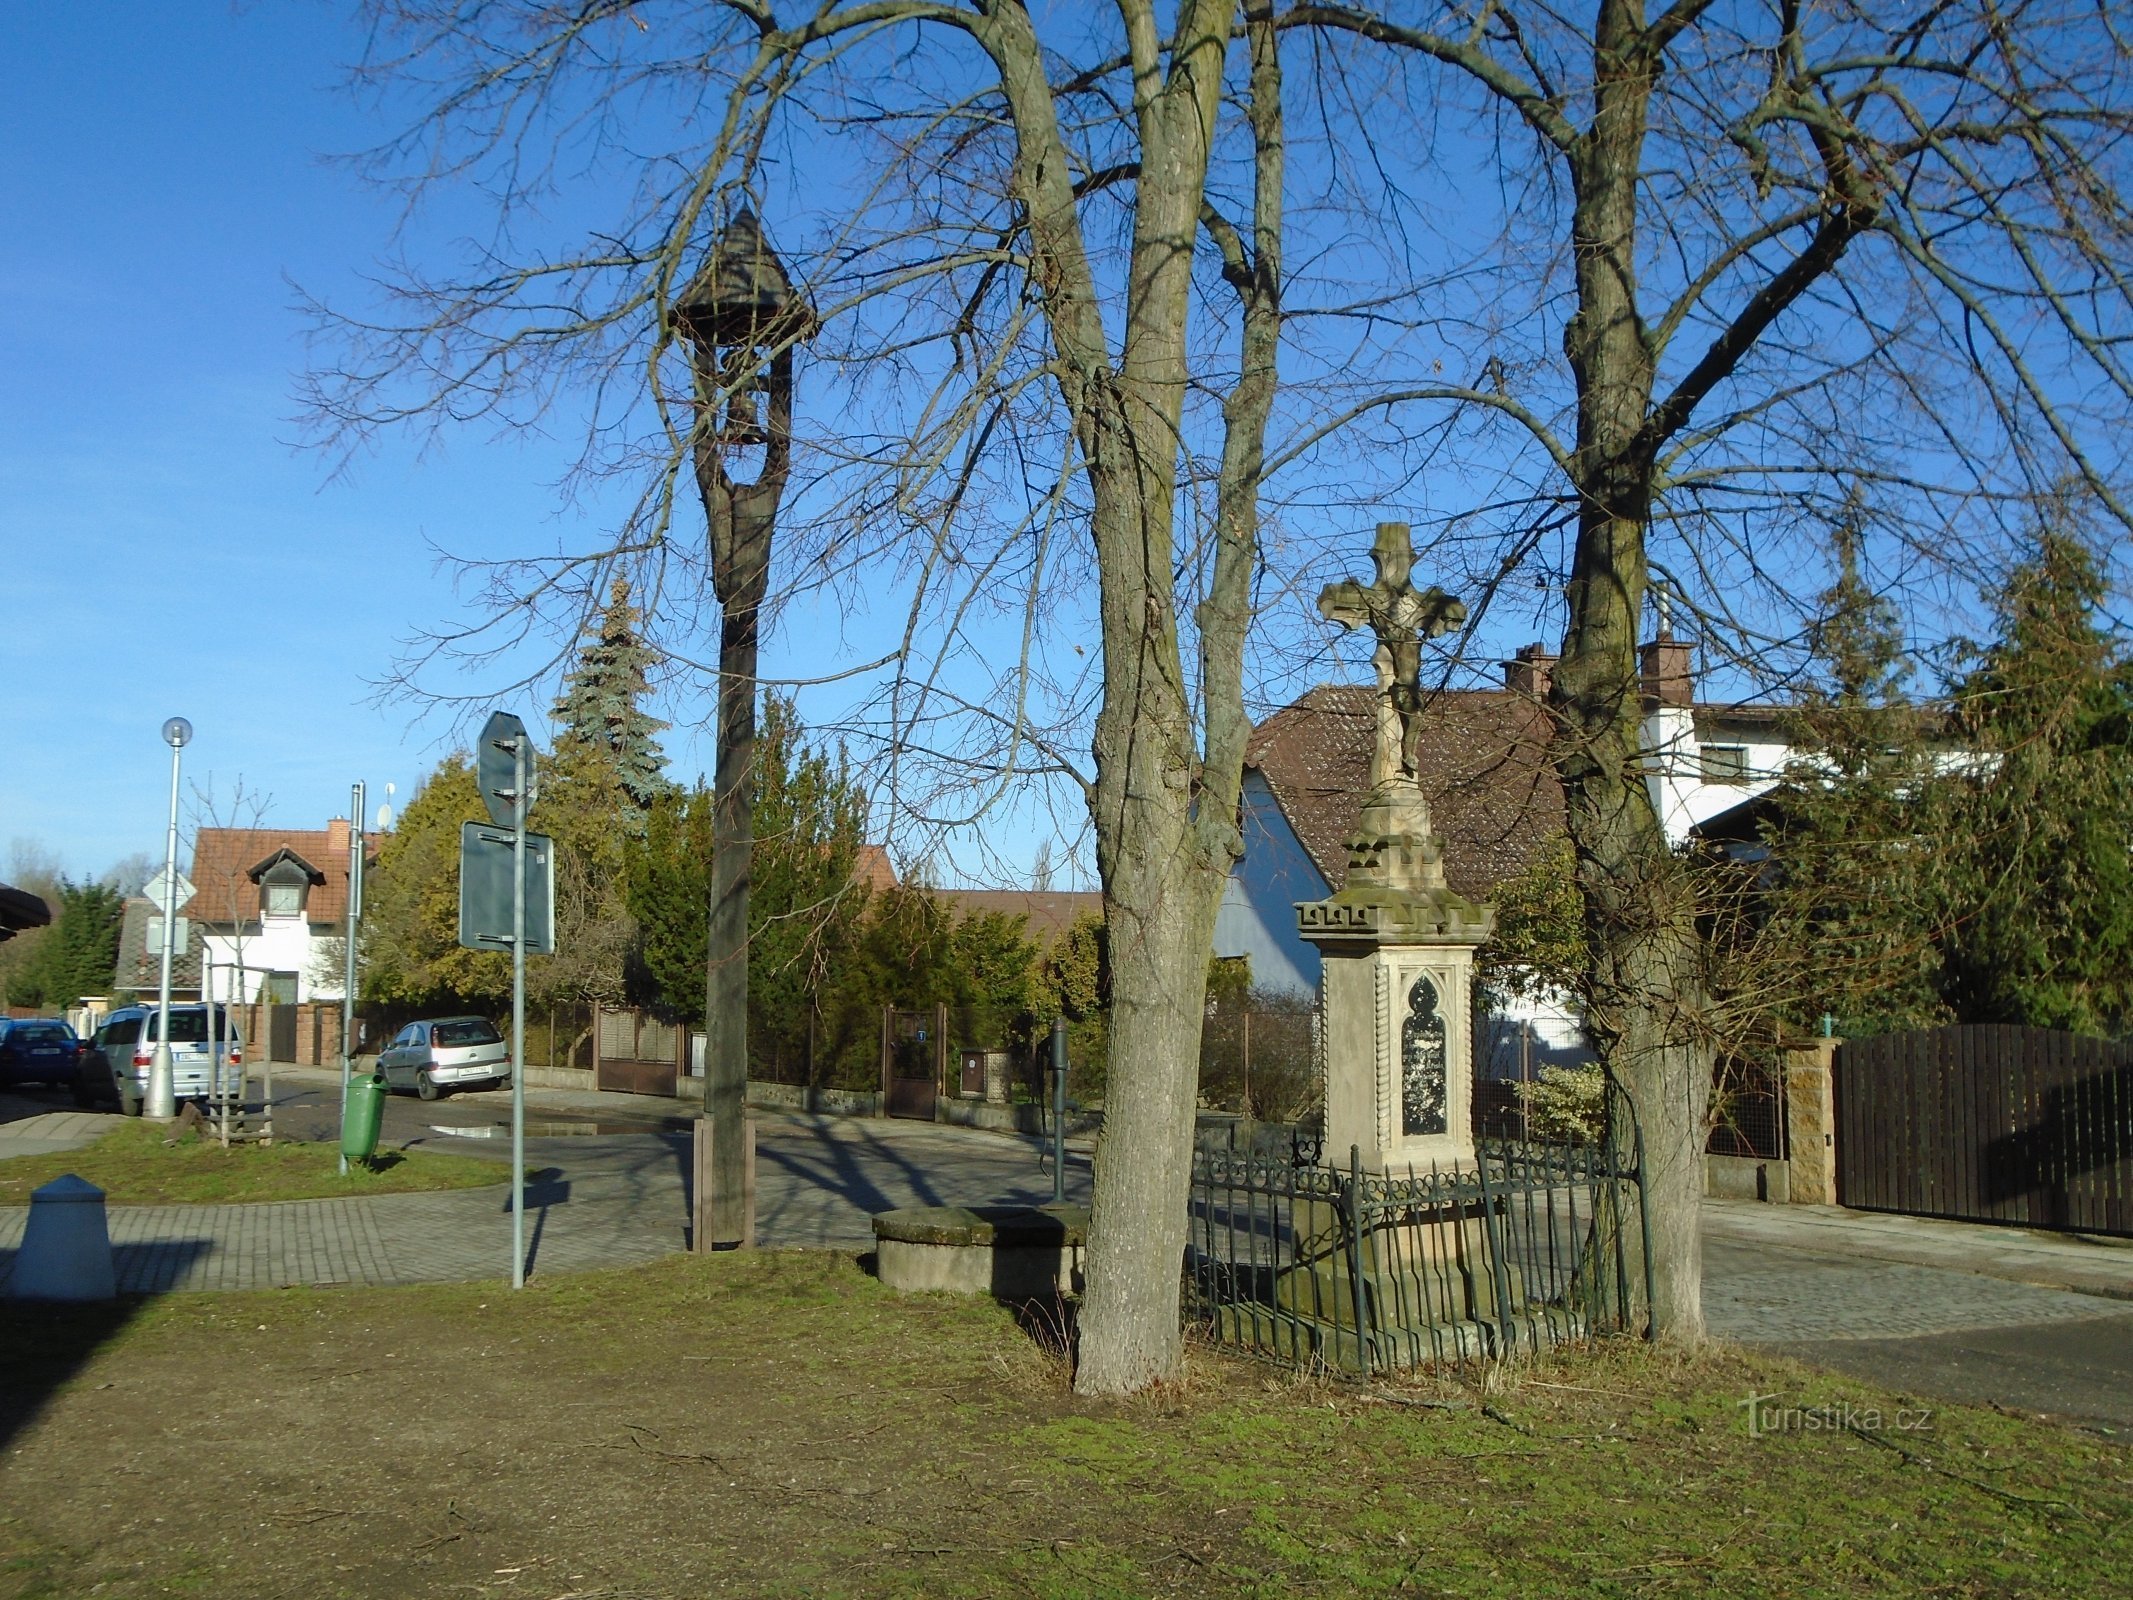 Tháp chuông và thánh giá ở Třebš (Hradec Králové, 17.3.2019/XNUMX/XNUMX)